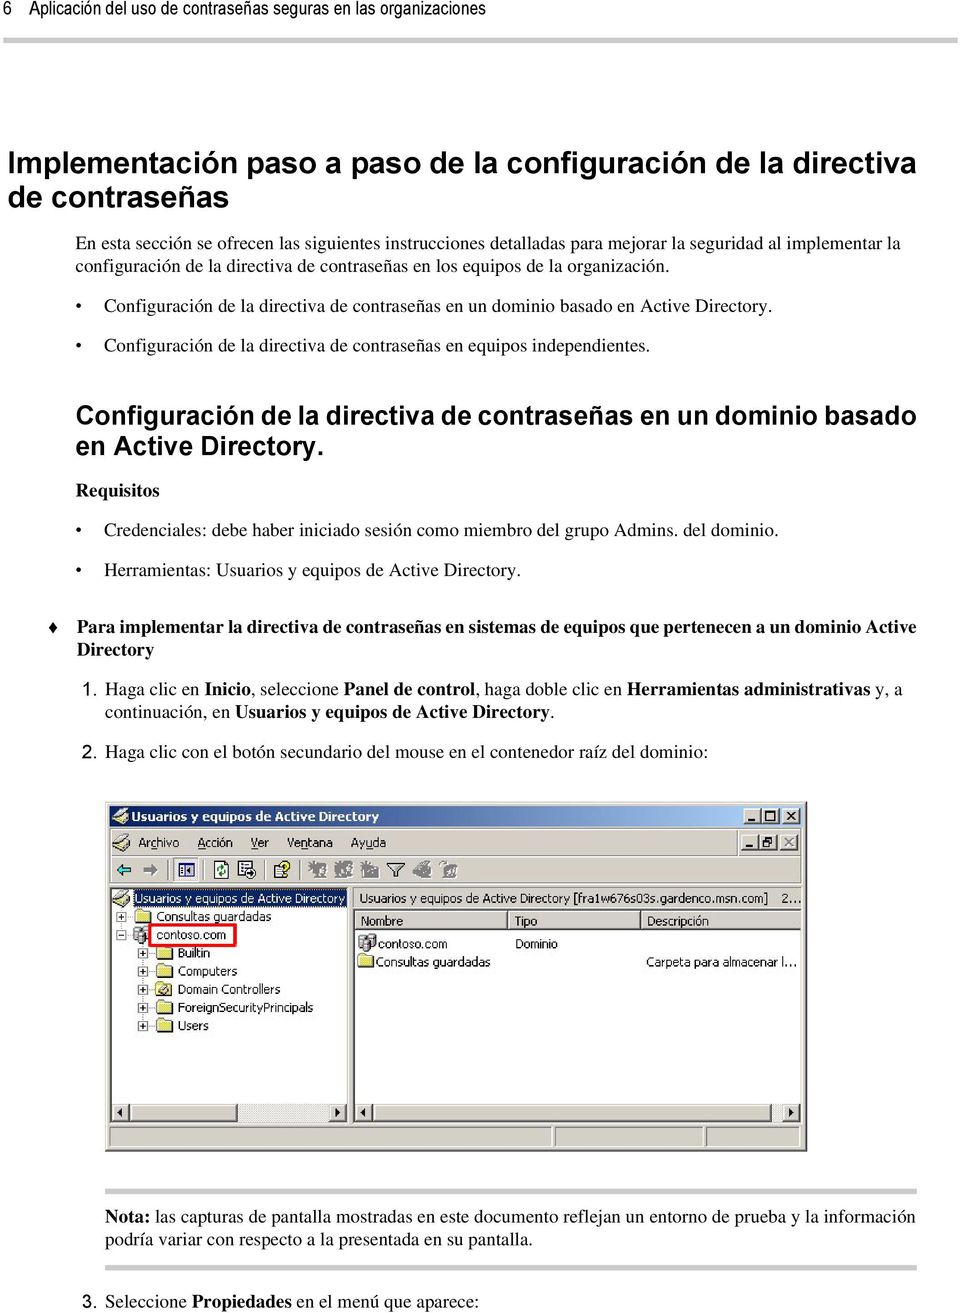 Configuración de la directiva de contraseñas en un dominio basado en Active Directory. Configuración de la directiva de contraseñas en equipos independientes.